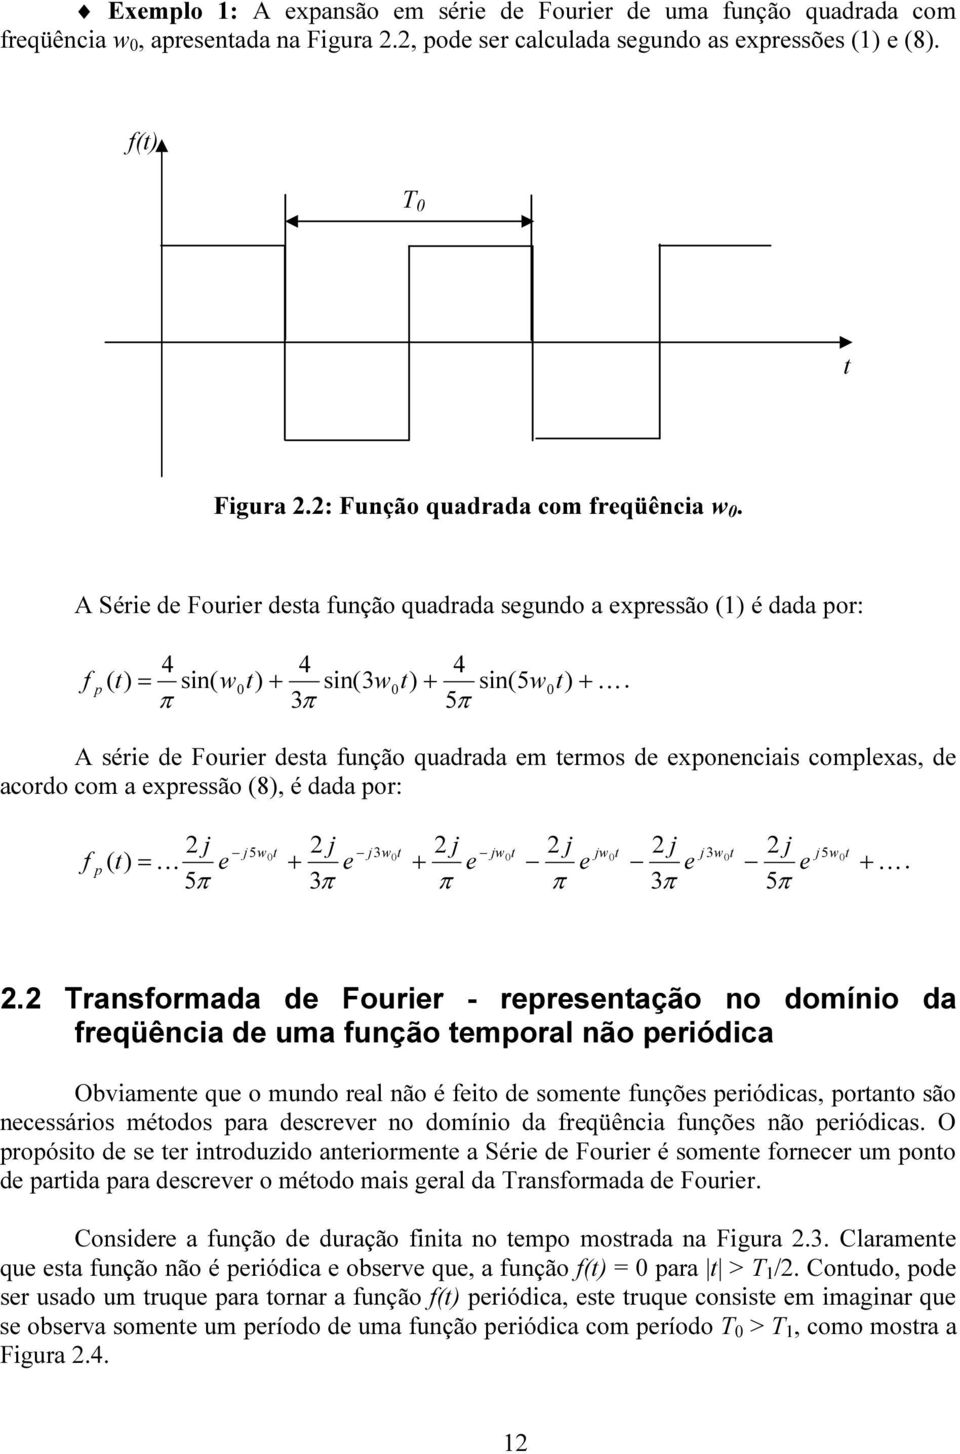 π 3π 5π f p ( 0 A série de Fourier desta função quadrada em termos de exponenciais complexas, de acordo com a expressão (8), é dada por: 2 j j5w t 2 j j w t j jw t j jw t j j w t j 0 3 2 2 2 0 0 0 3